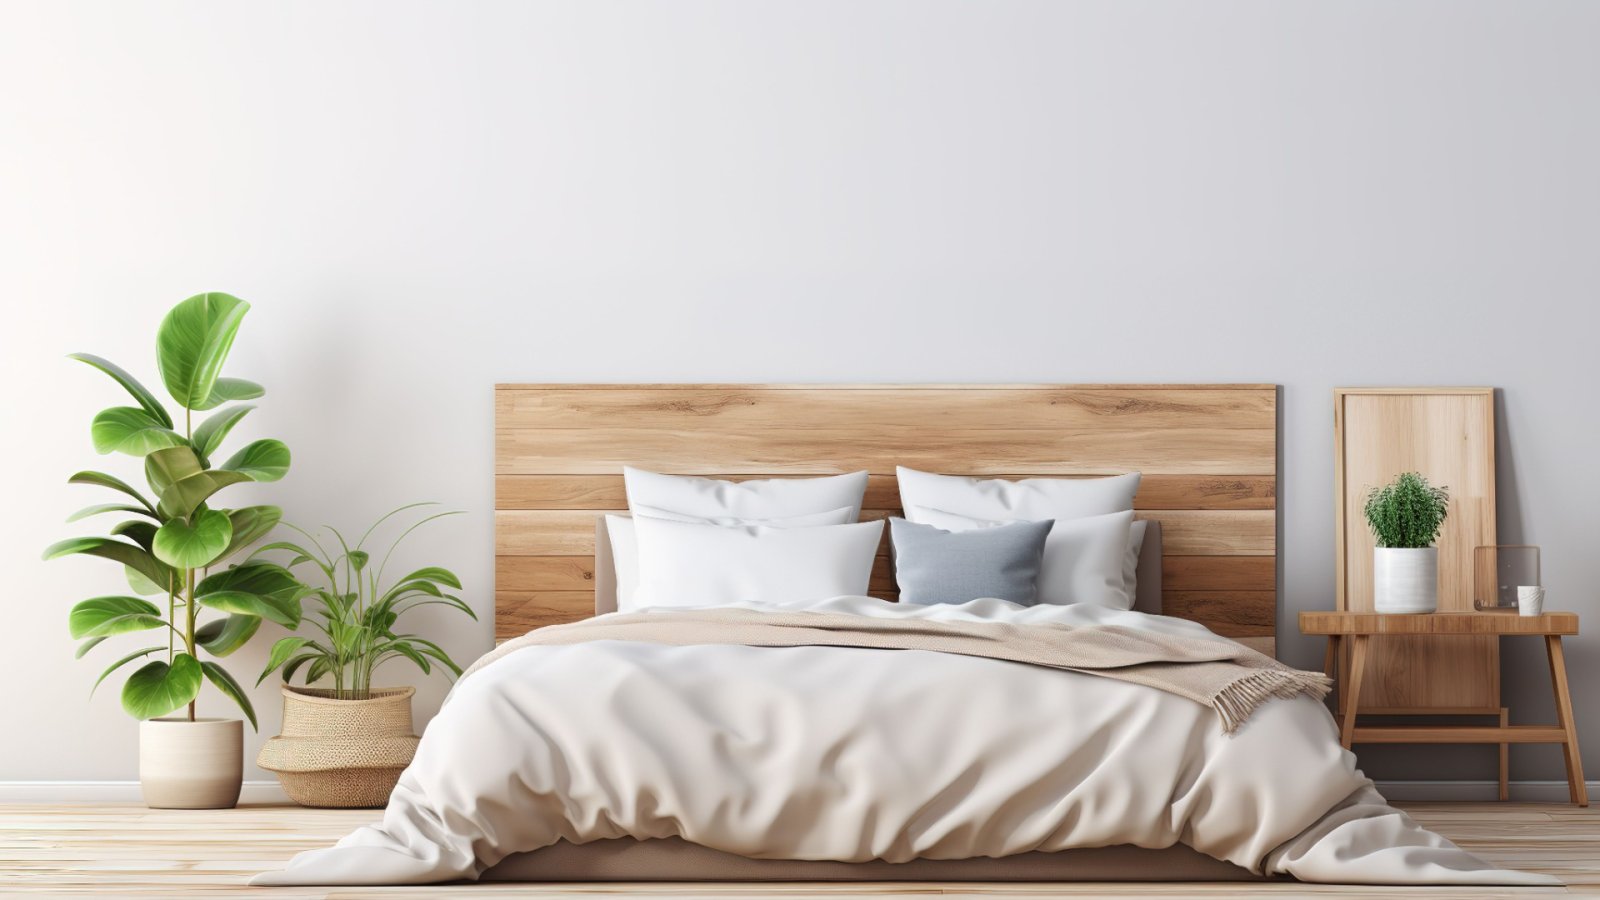 Wskazówki i porady, jak zaaranżować przestrzeń do spania na minimalistyczną sypialnię